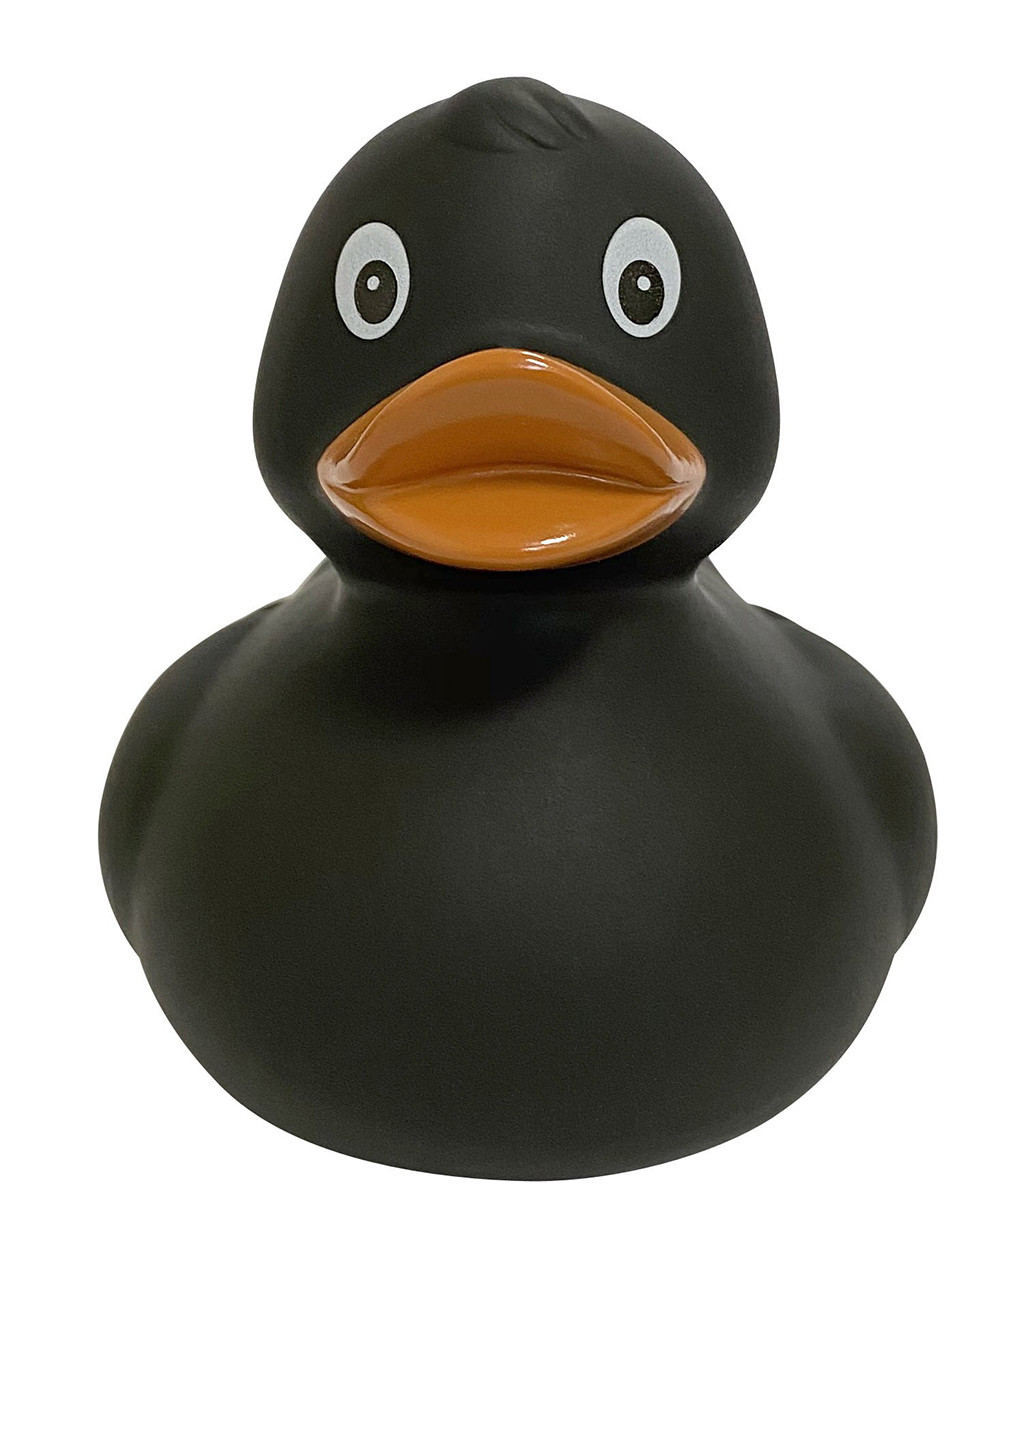 Игрушка для купания Утка, 8,5x8,5x7,5 см Funny Ducks (250618826)